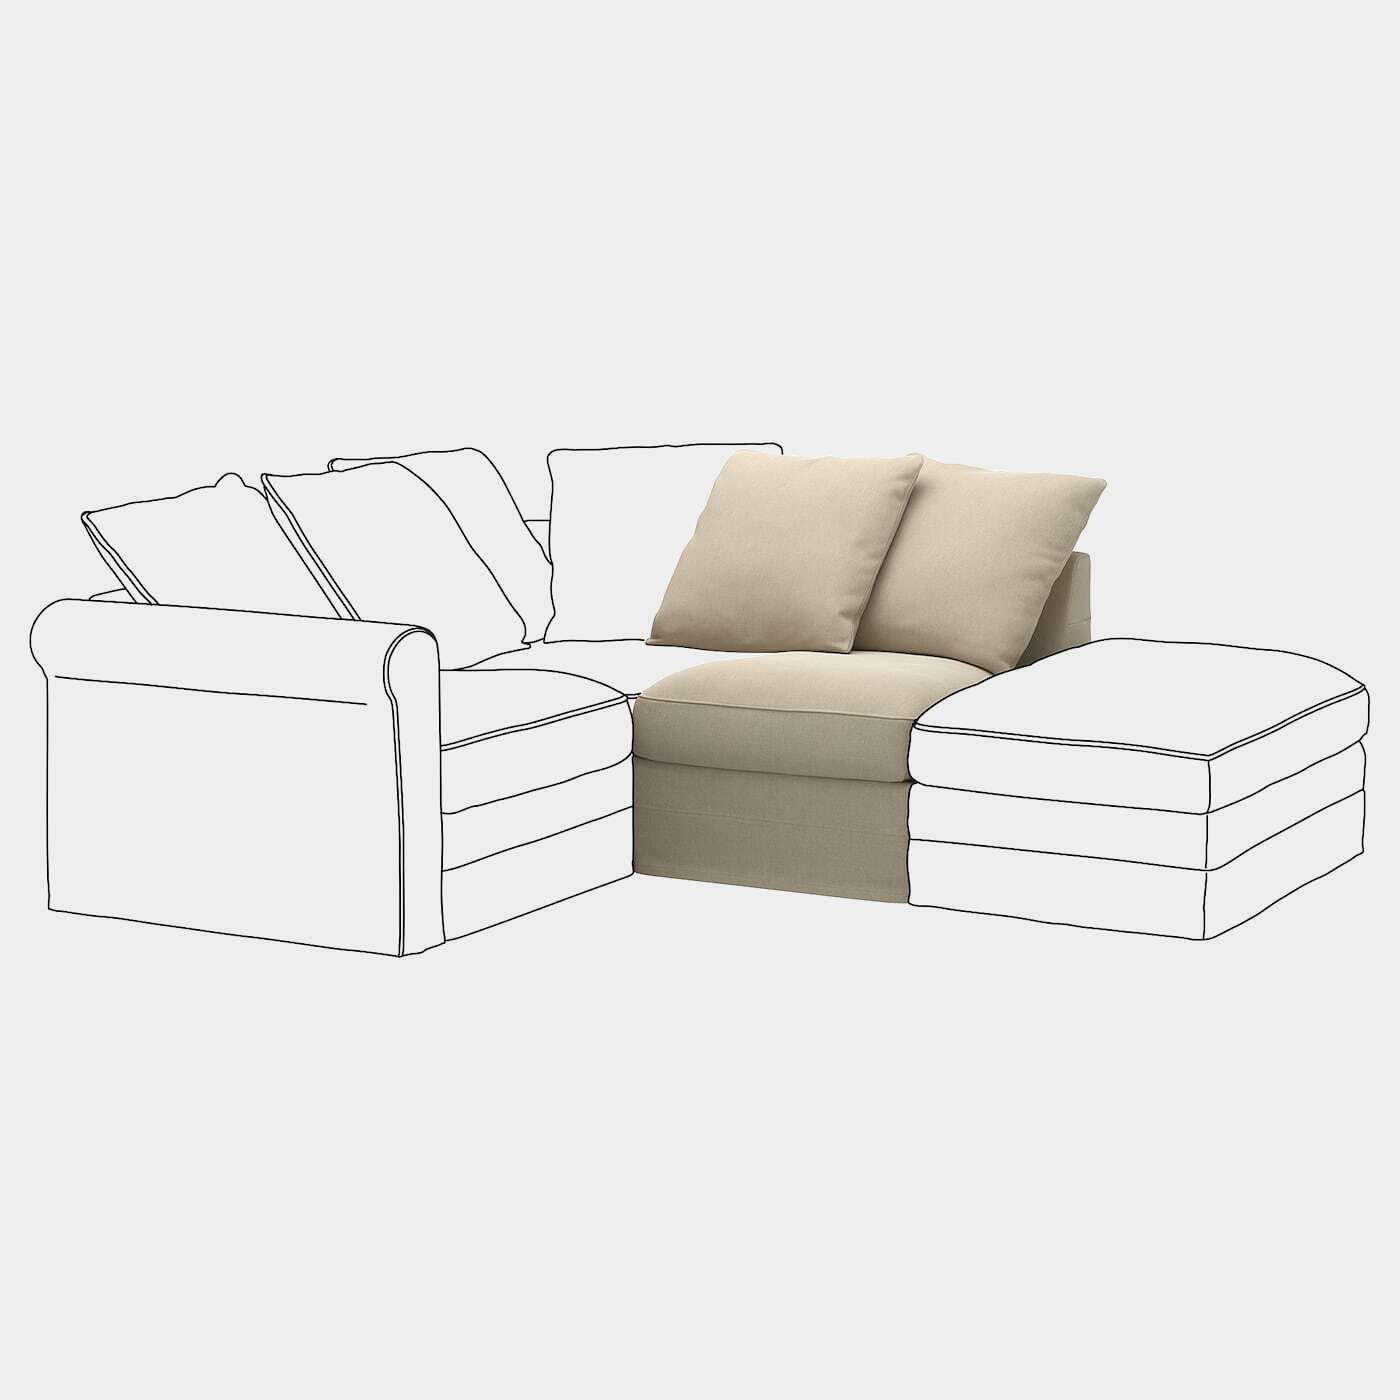 GRÖNLID Sitzelement 1  -  - Möbel Ideen für dein Zuhause von Home Trends. Möbel Trends von Social Media Influencer für dein Skandi Zuhause.